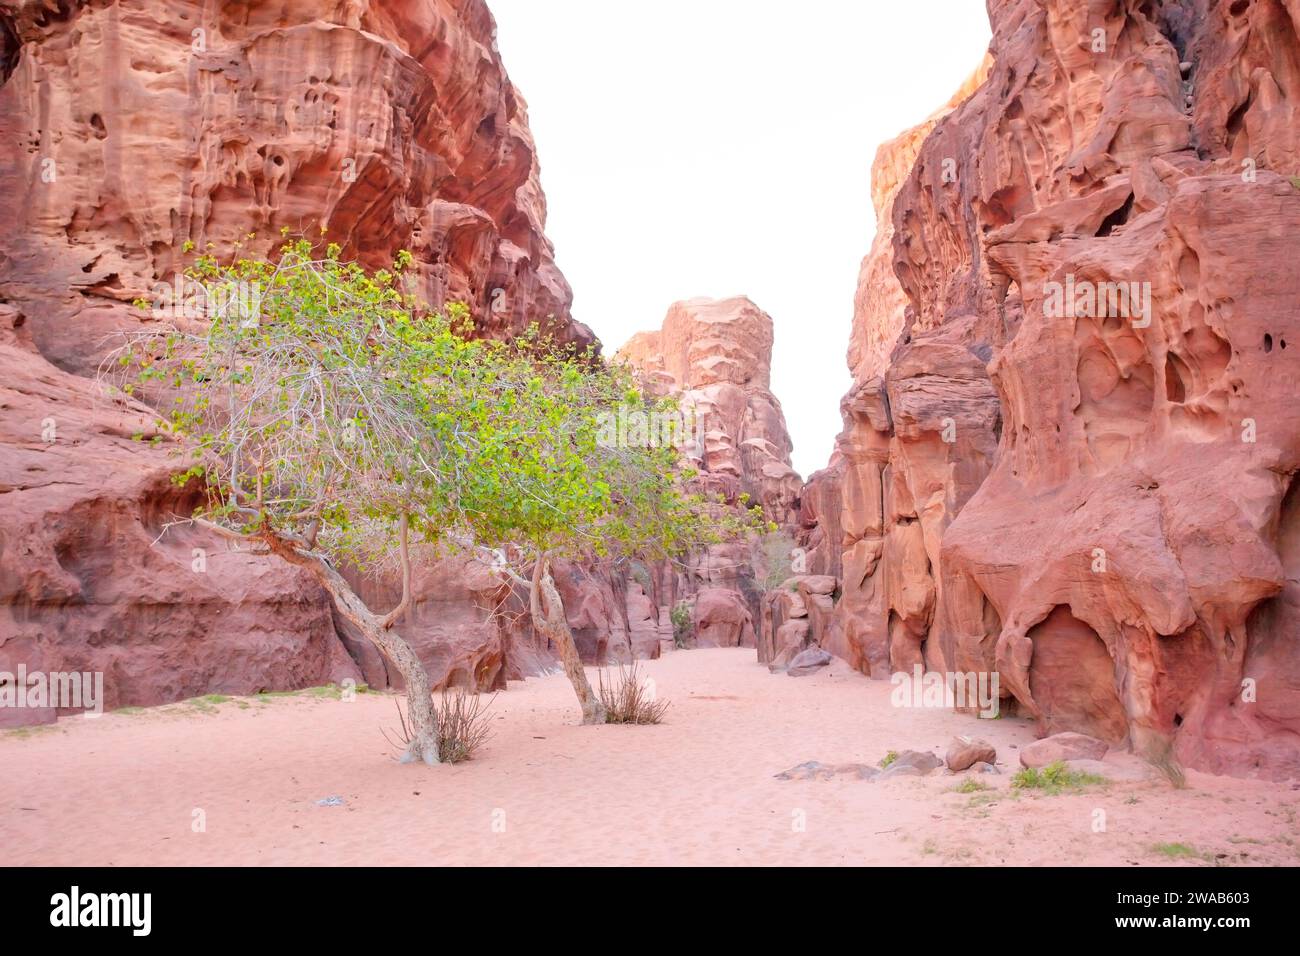 Green trees among the desertic landscape of the Wadi Rum desert, Jordan, Middle East. Stock Photo